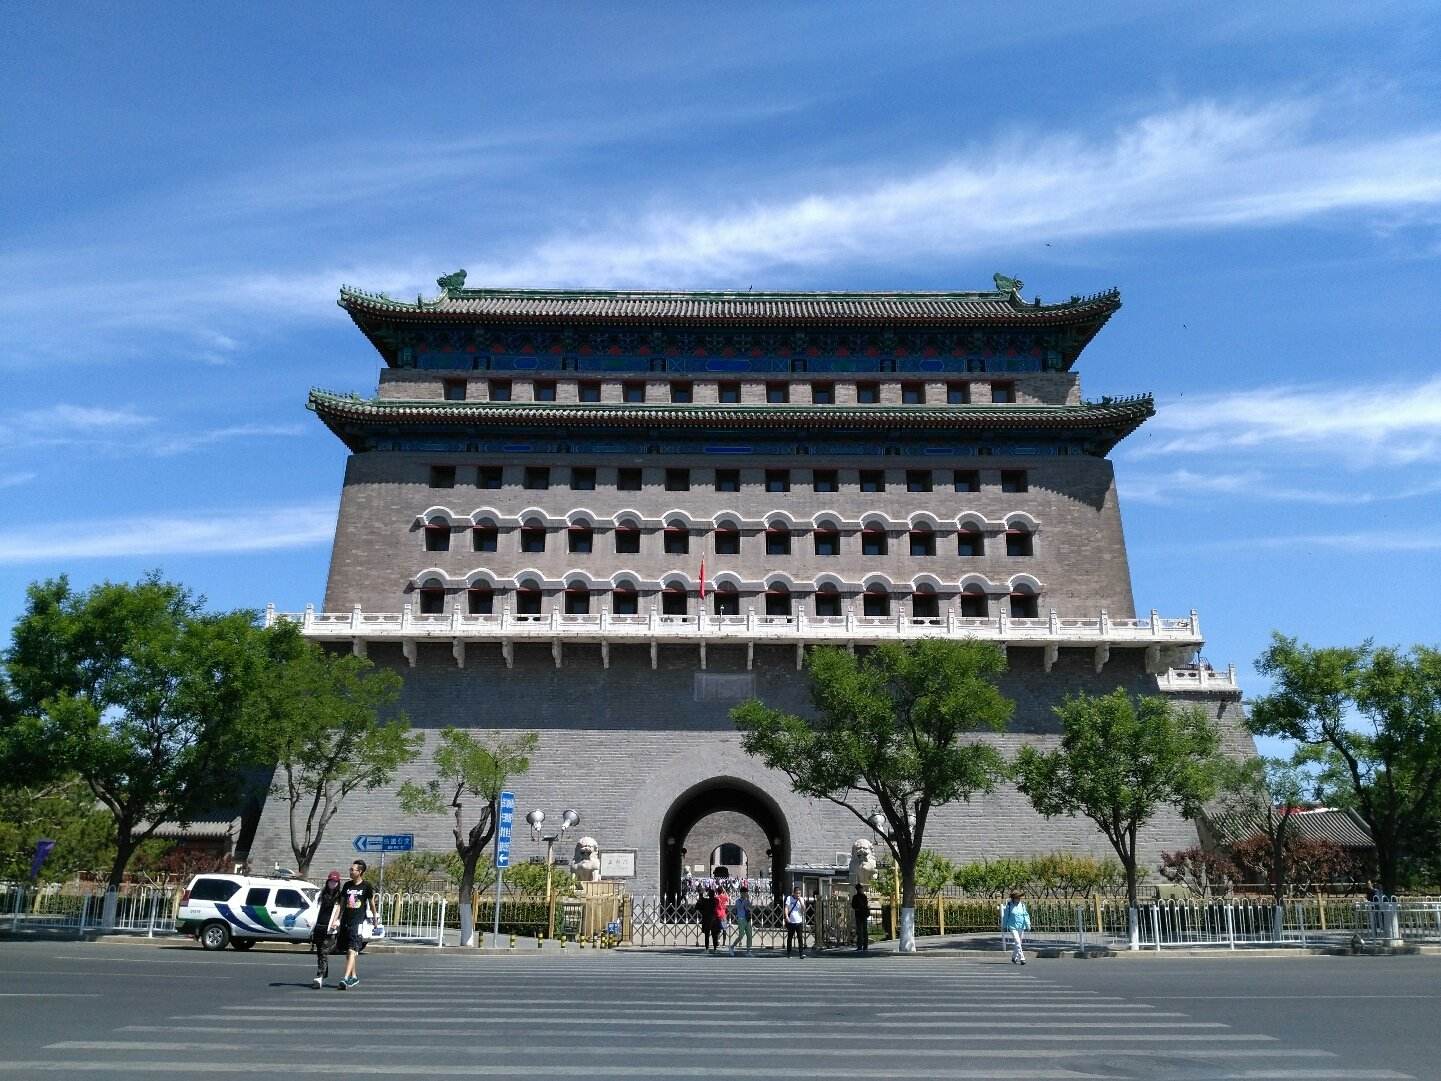 北京正阳门箭楼明年有望开放 可参观“水平石标”